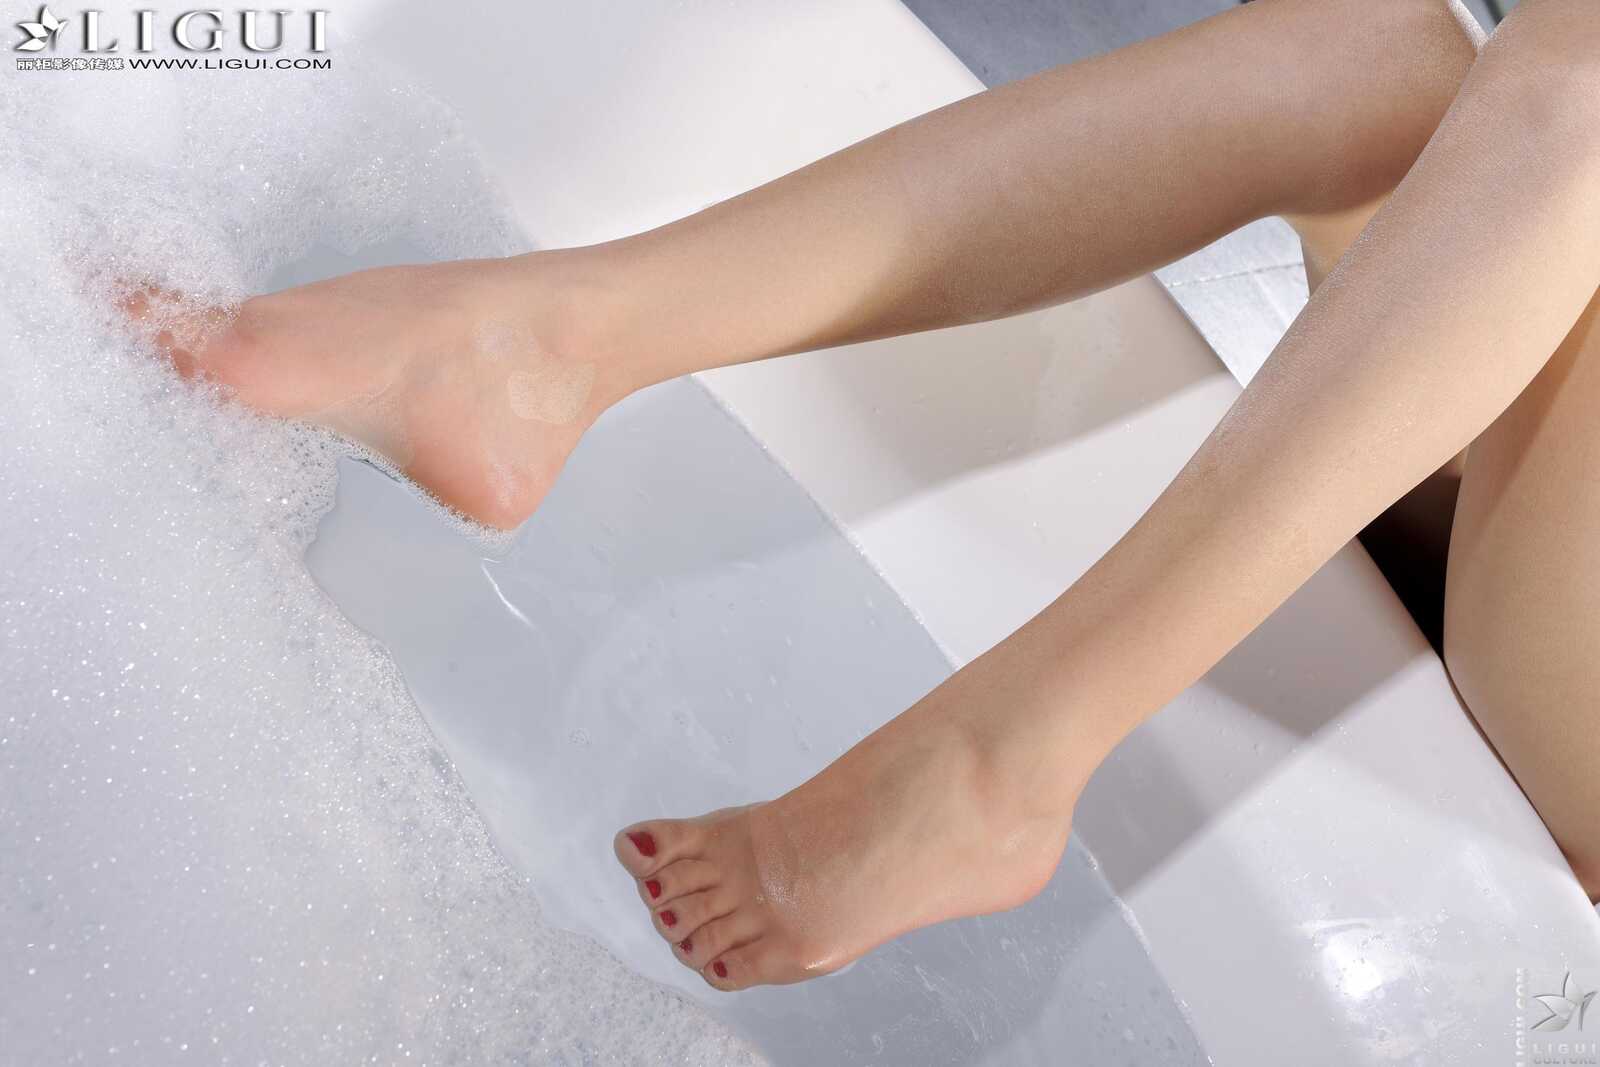 [丽柜LiGui] Model 文欣《浴室浴巾裹胸湿身》 美腿第3张